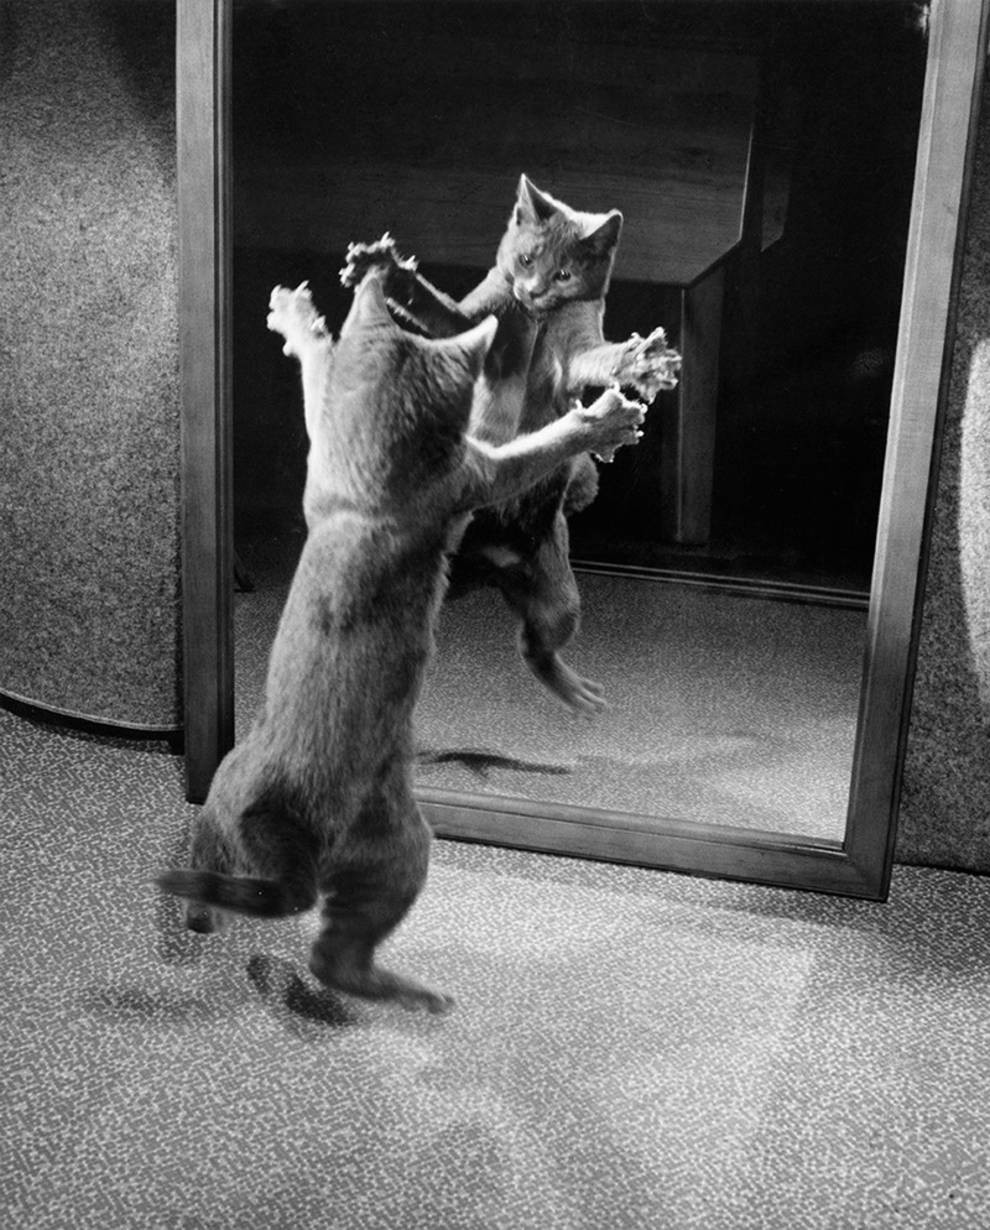 Кот играет со своим отражением в зеркале, 1964. Автор Уолтер Чандоха